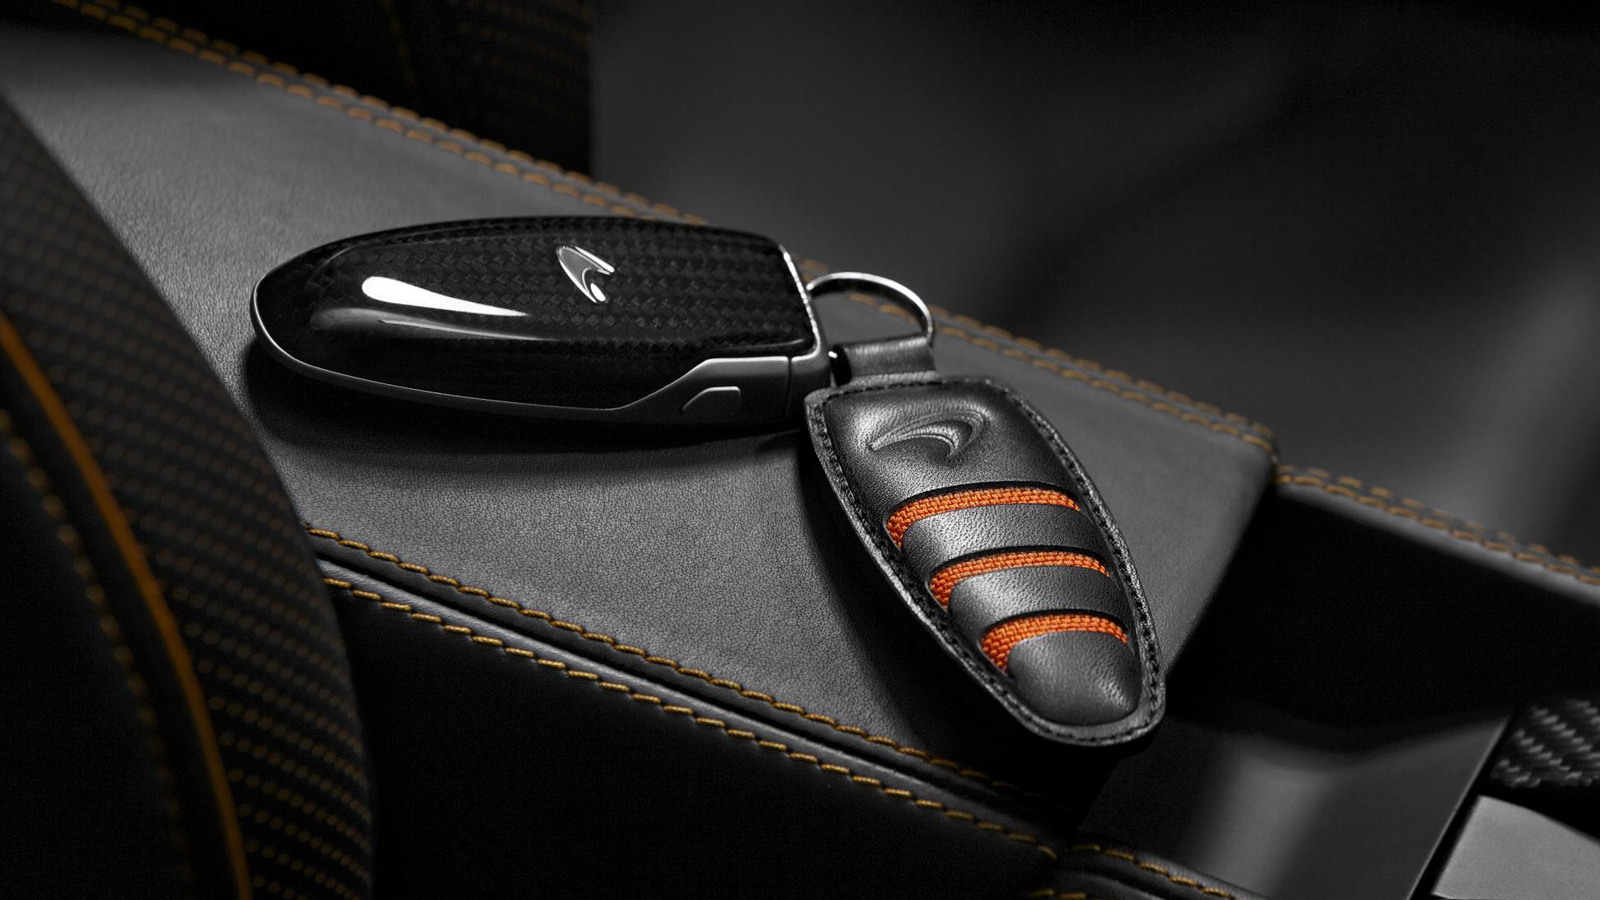 McLaren accessories range